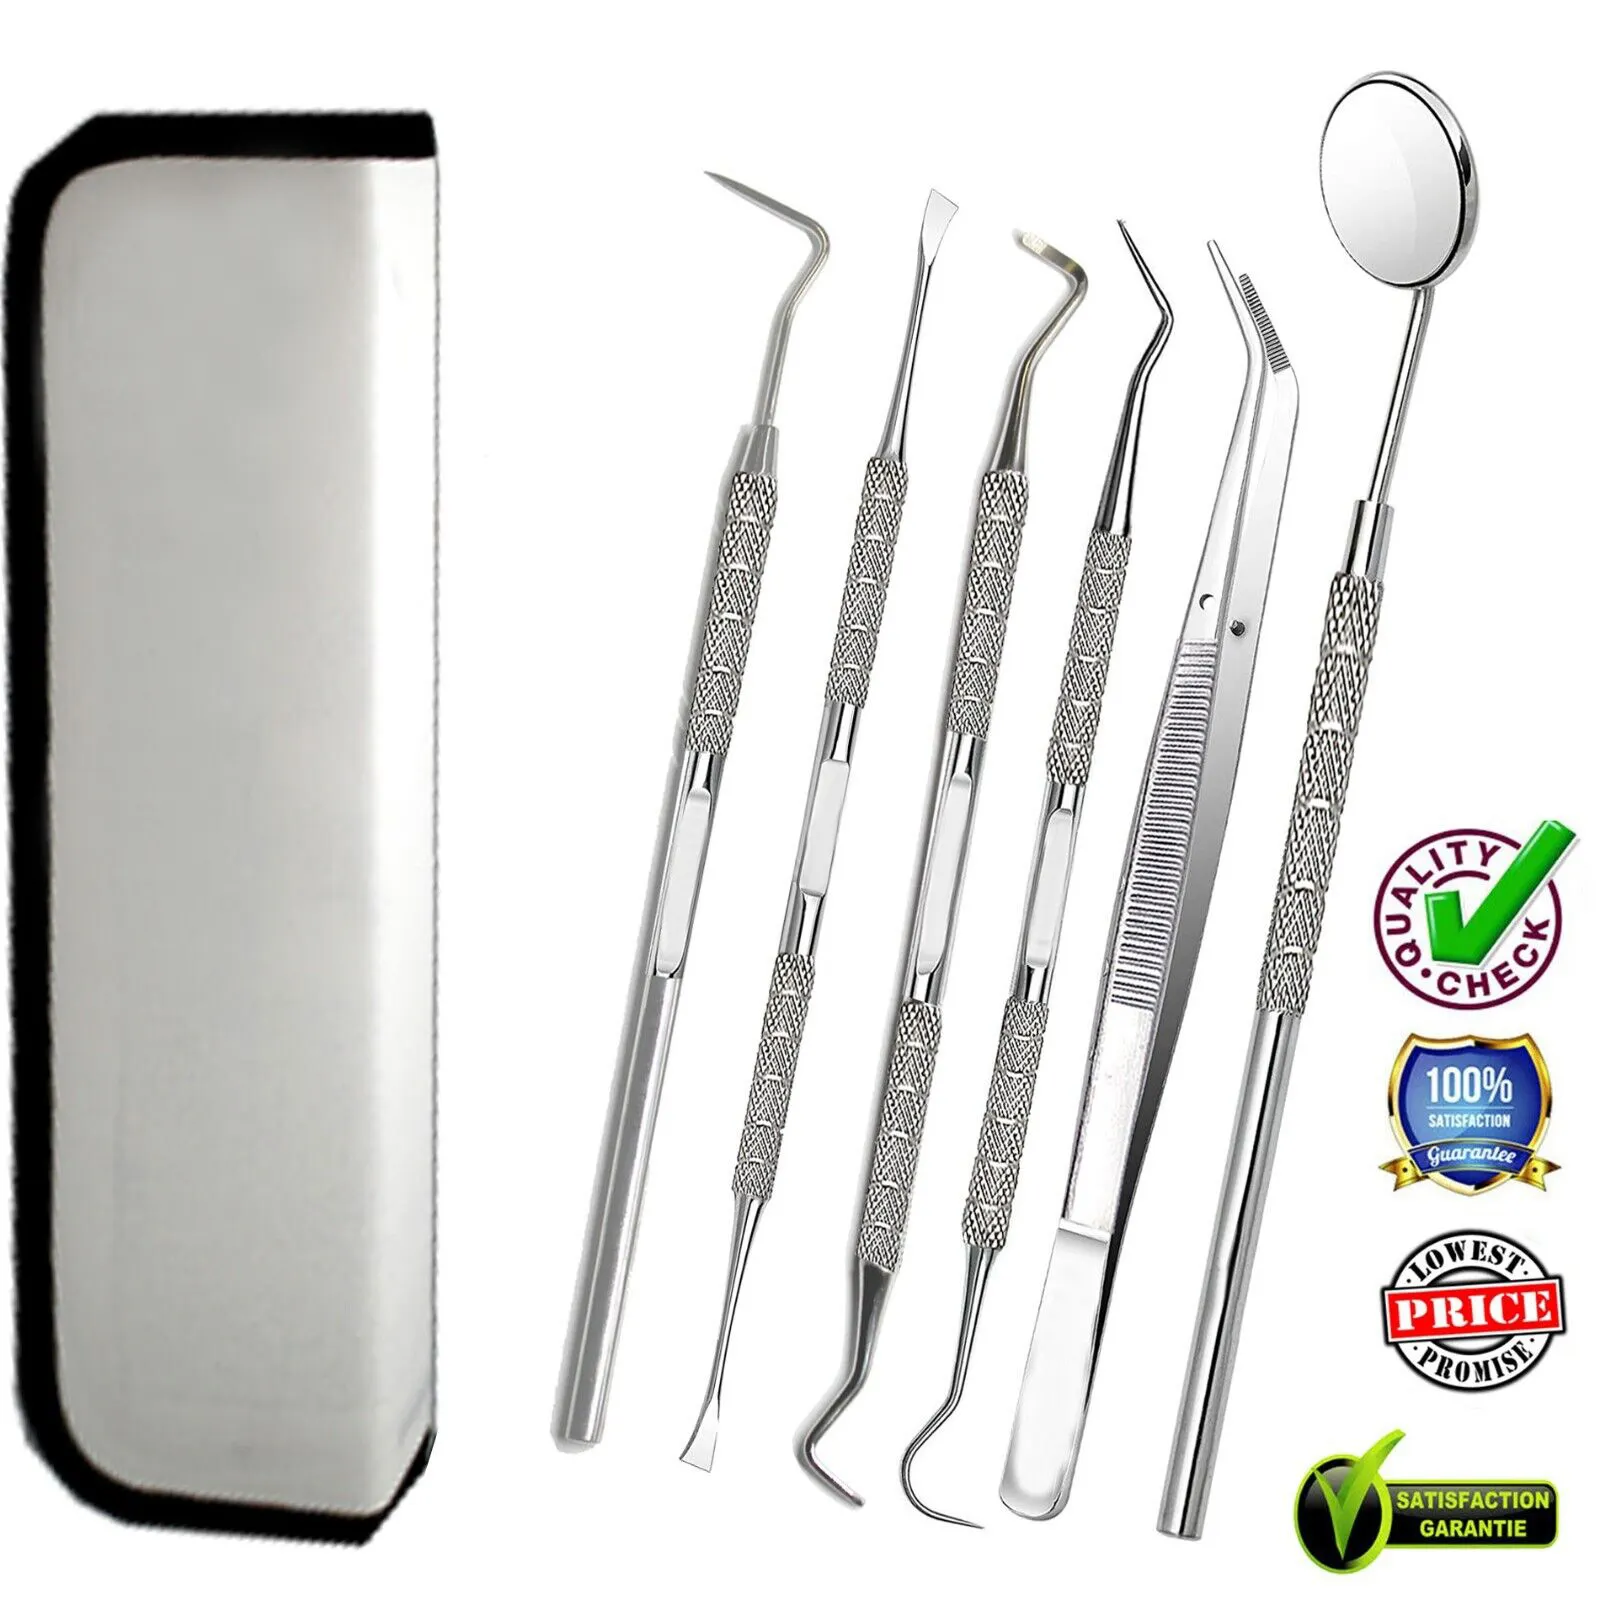 El kit de herramientas dentales incluye fórceps/Elevadores/espejos/escaladores y accesorio dental a precios muy razonables